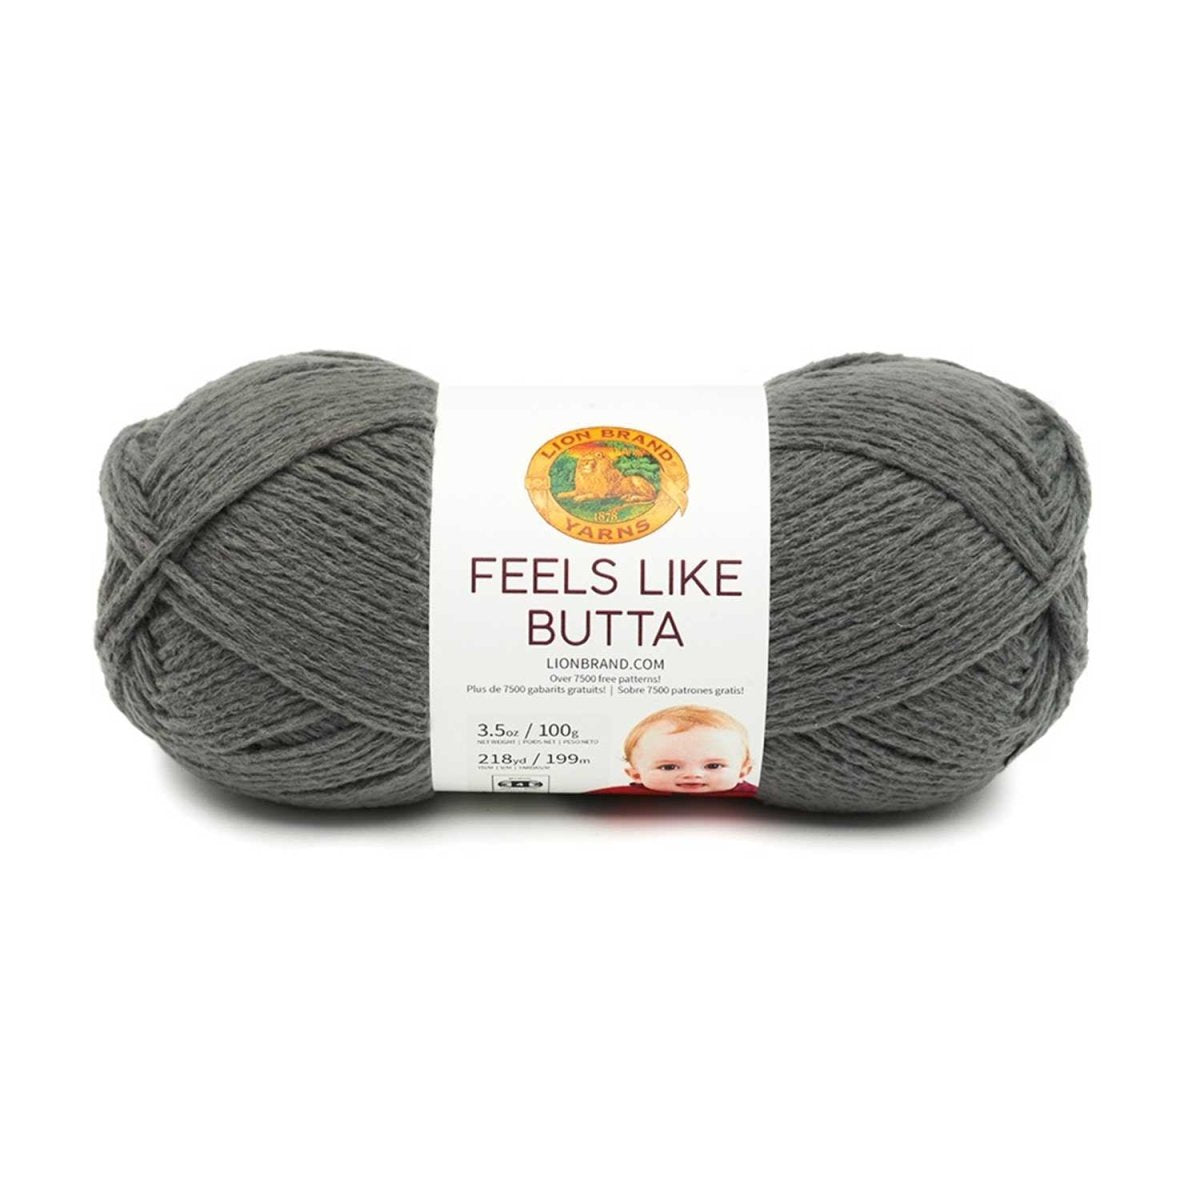 FEELS LIKE BUTTA - Crochetstores215-150